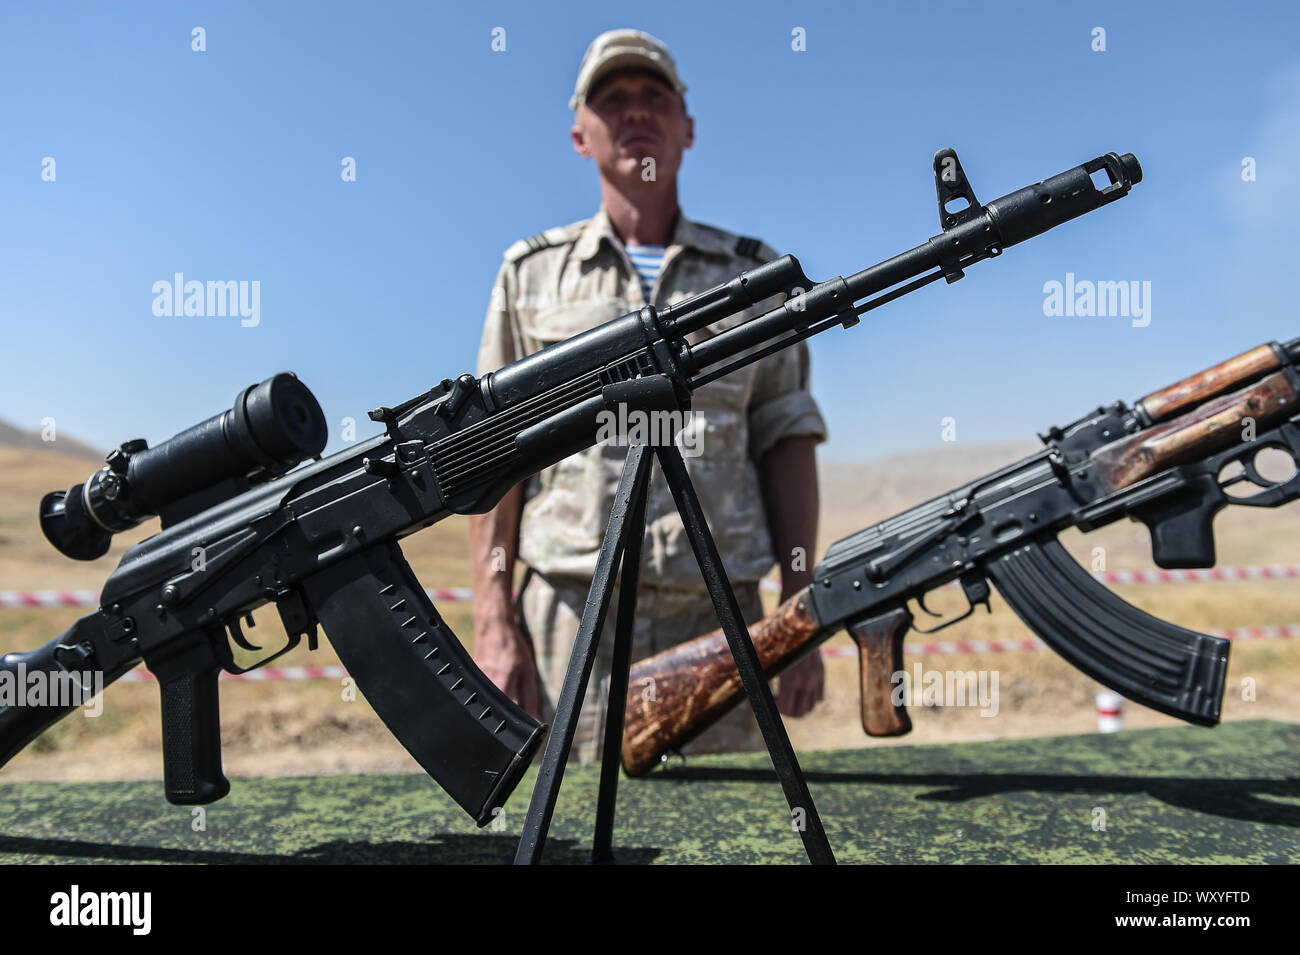 (190918) -- DUSHANBE, Sett. 18, 2019 (Xinhua) -- russo fucili automatici AKM (L) e AK-74 sono visibili durante il centro-2019 esercitazione militare nella regione di Dushanbe, Tagikistan, sul Sett. 18, 2019. Tsentr-2019 (Centro-2019) esercitazioni militari che coinvolge otto paesi iniziata lunedì in Russia, Kazakistan e Tagikistan, Ministero della Difesa russo ha detto in una dichiarazione il martedì. Un totale di 128.000 truppe, più di 20.000 unità di armi ed equipaggiamenti militari, circa 600 velivoli e fino a 15 navi e navi di sostegno prenderà parte a trapani su diversi motivi di formazione nei tre paesi Foto Stock